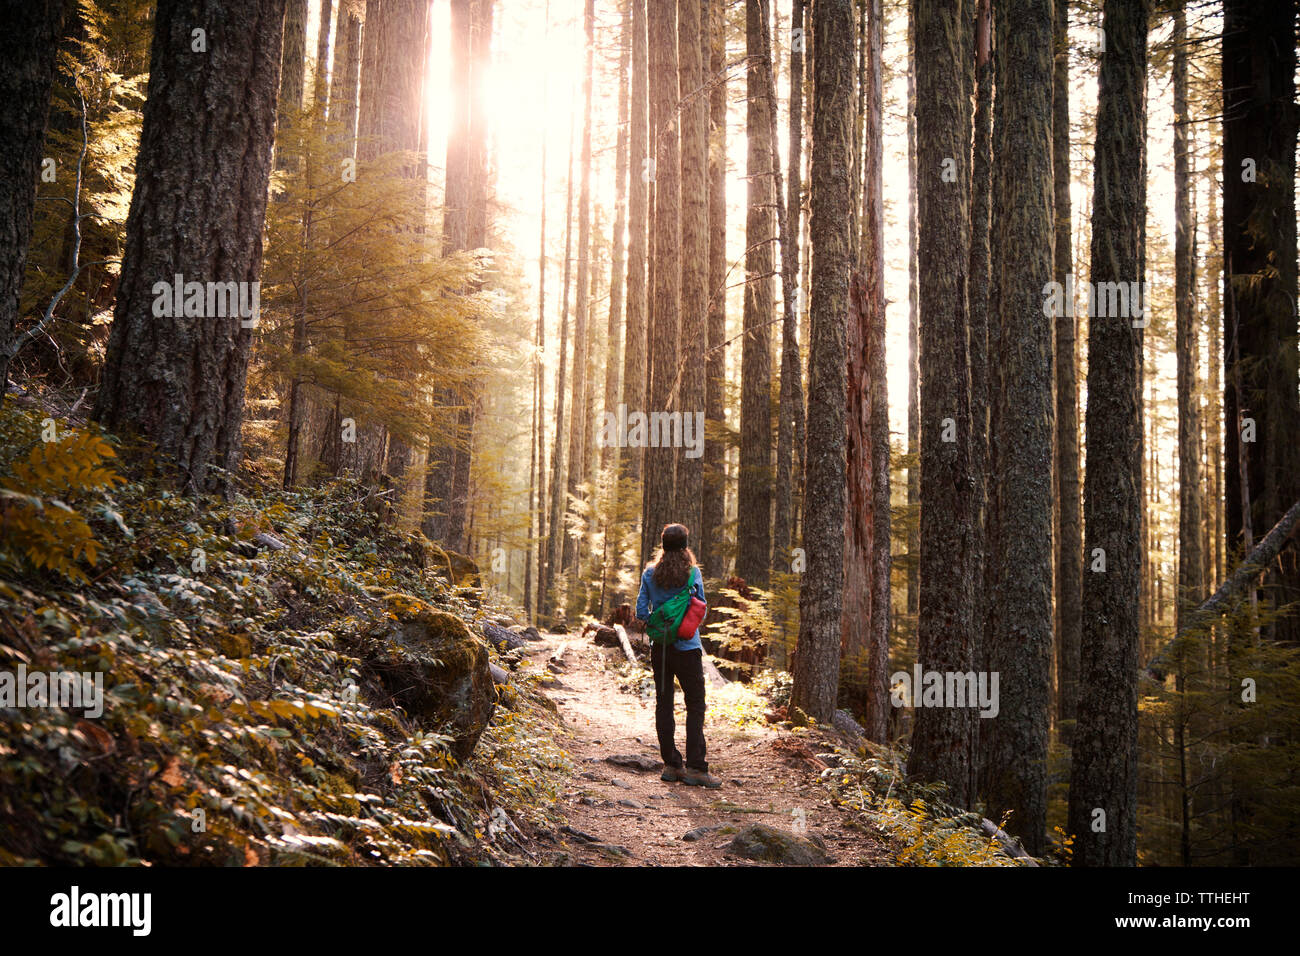 Weibliche Wanderer auf Weg inmitten von Bäumen im Wald Stockfoto